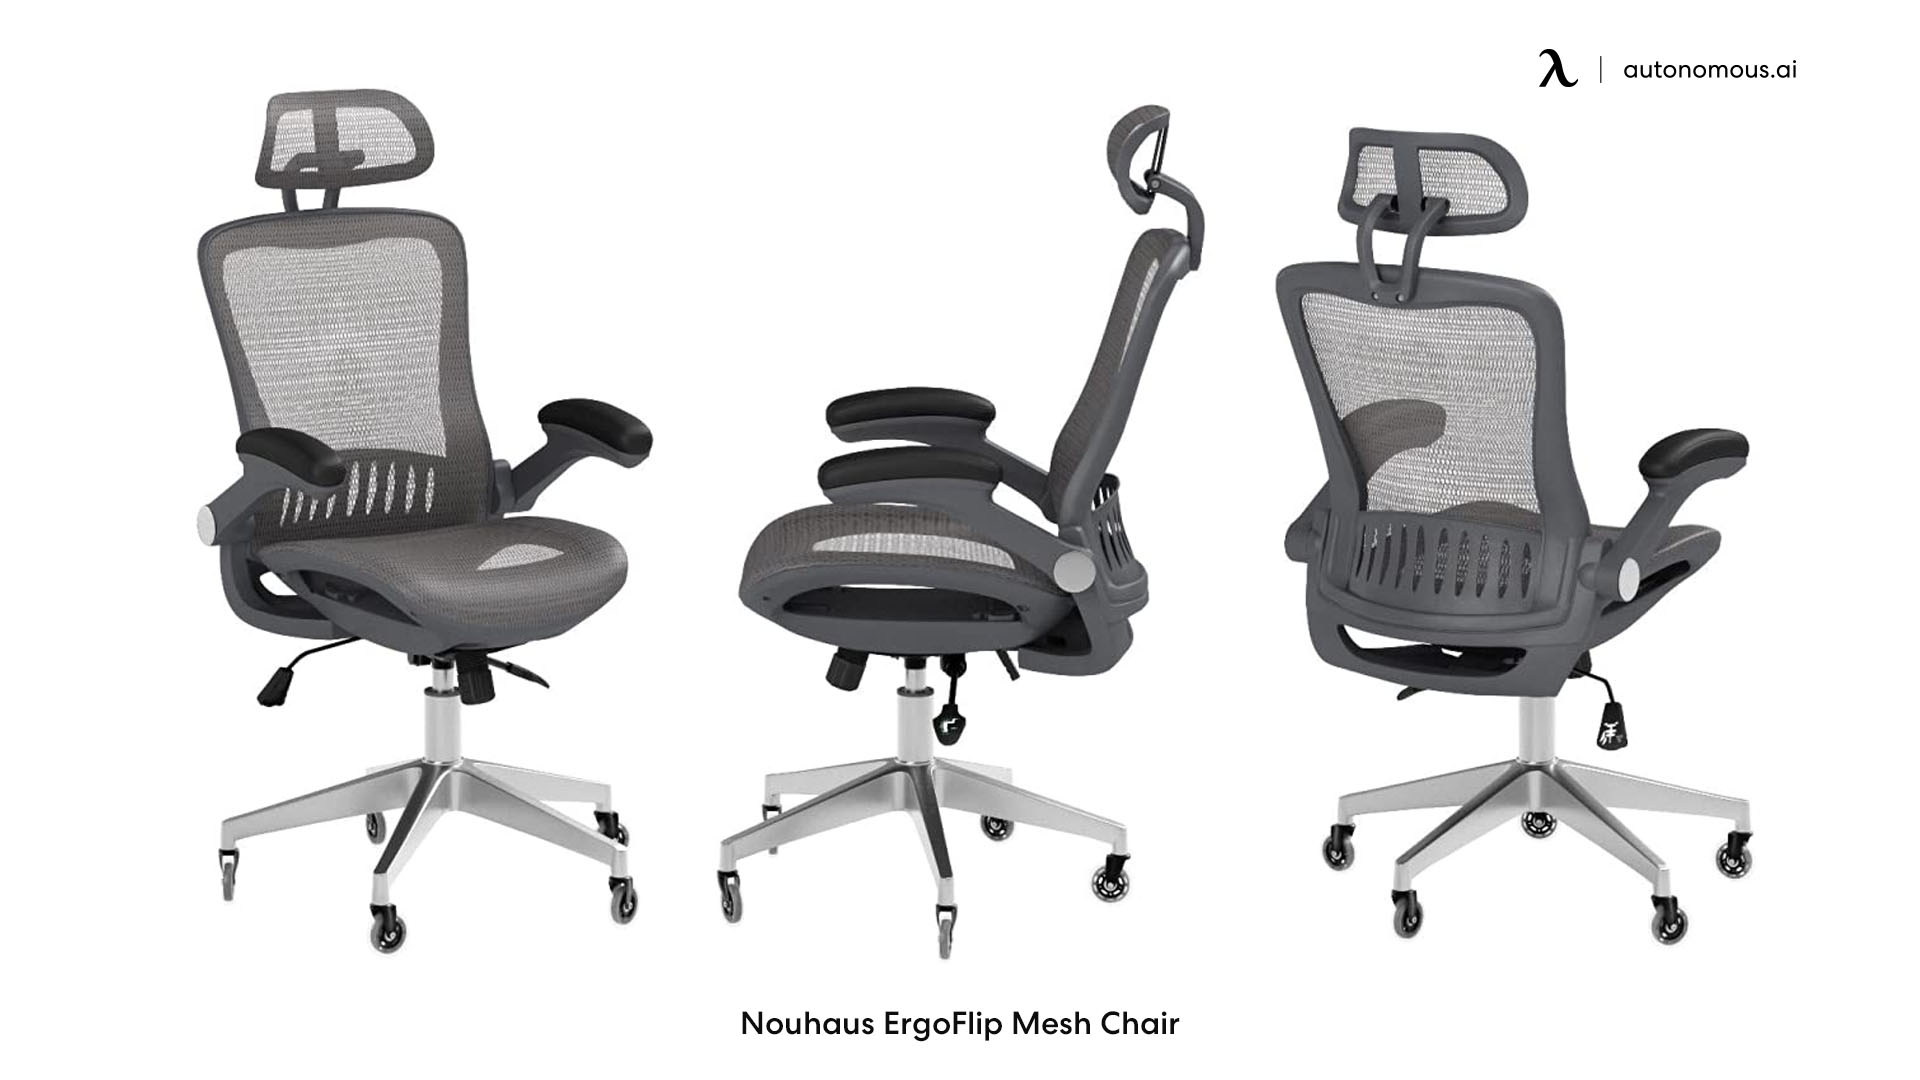 ErgoFlip Mesh Computer Chair from NOUHAUS